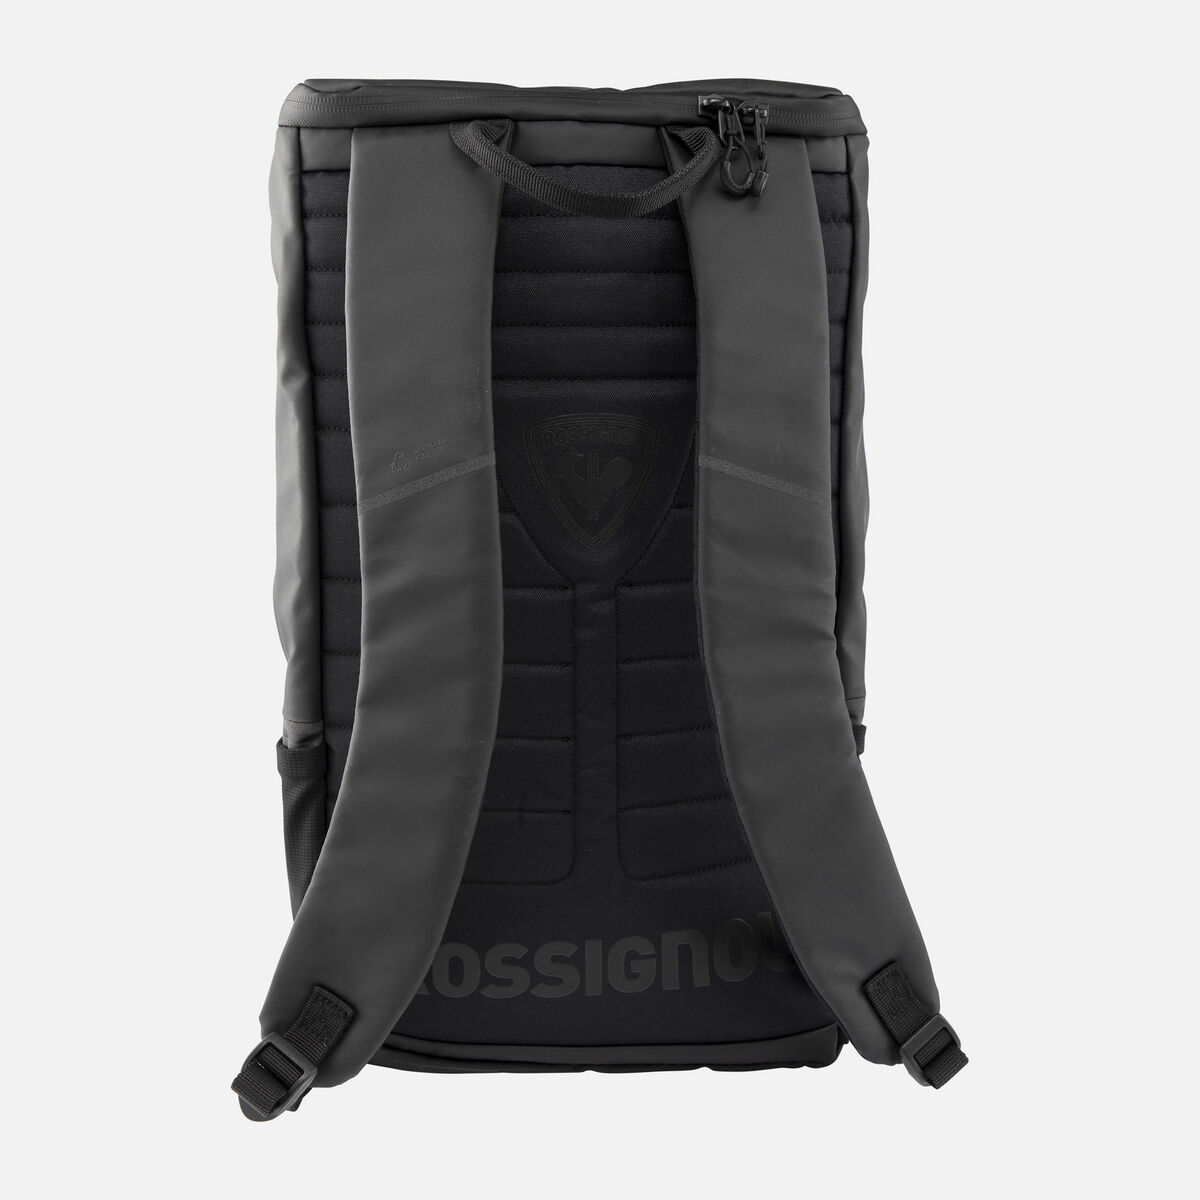 Rossignol Unisex 15L black waterproof Commuters backpack Black